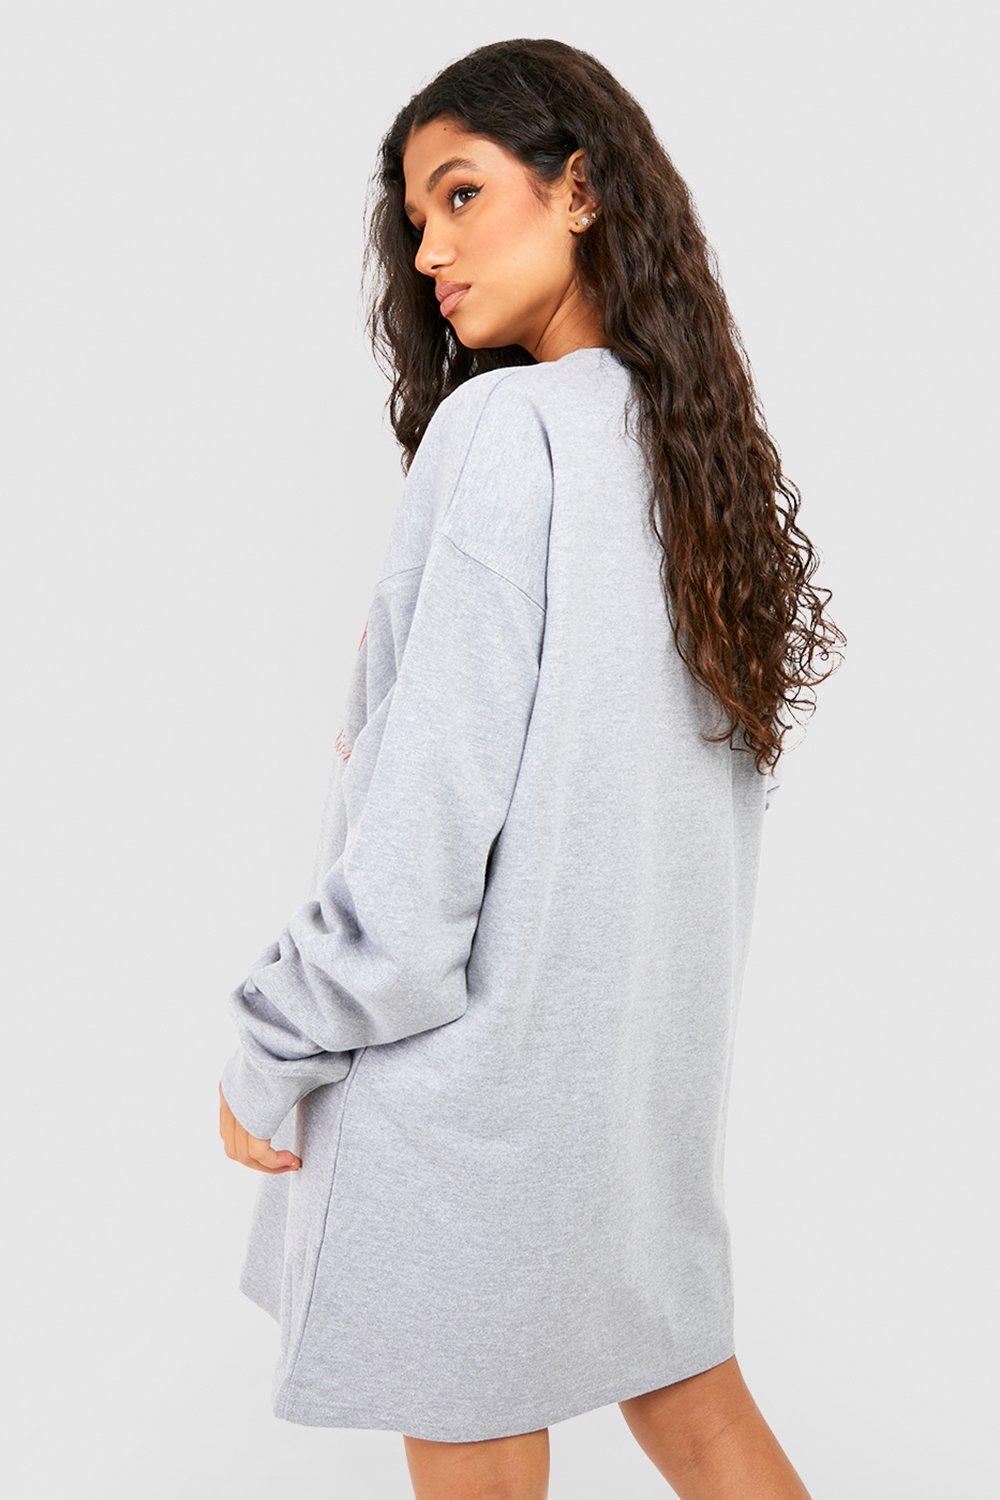 PRETTYLITTLETHING Women's Grey Marl Brooklyn Printed Hoodie - Size XL